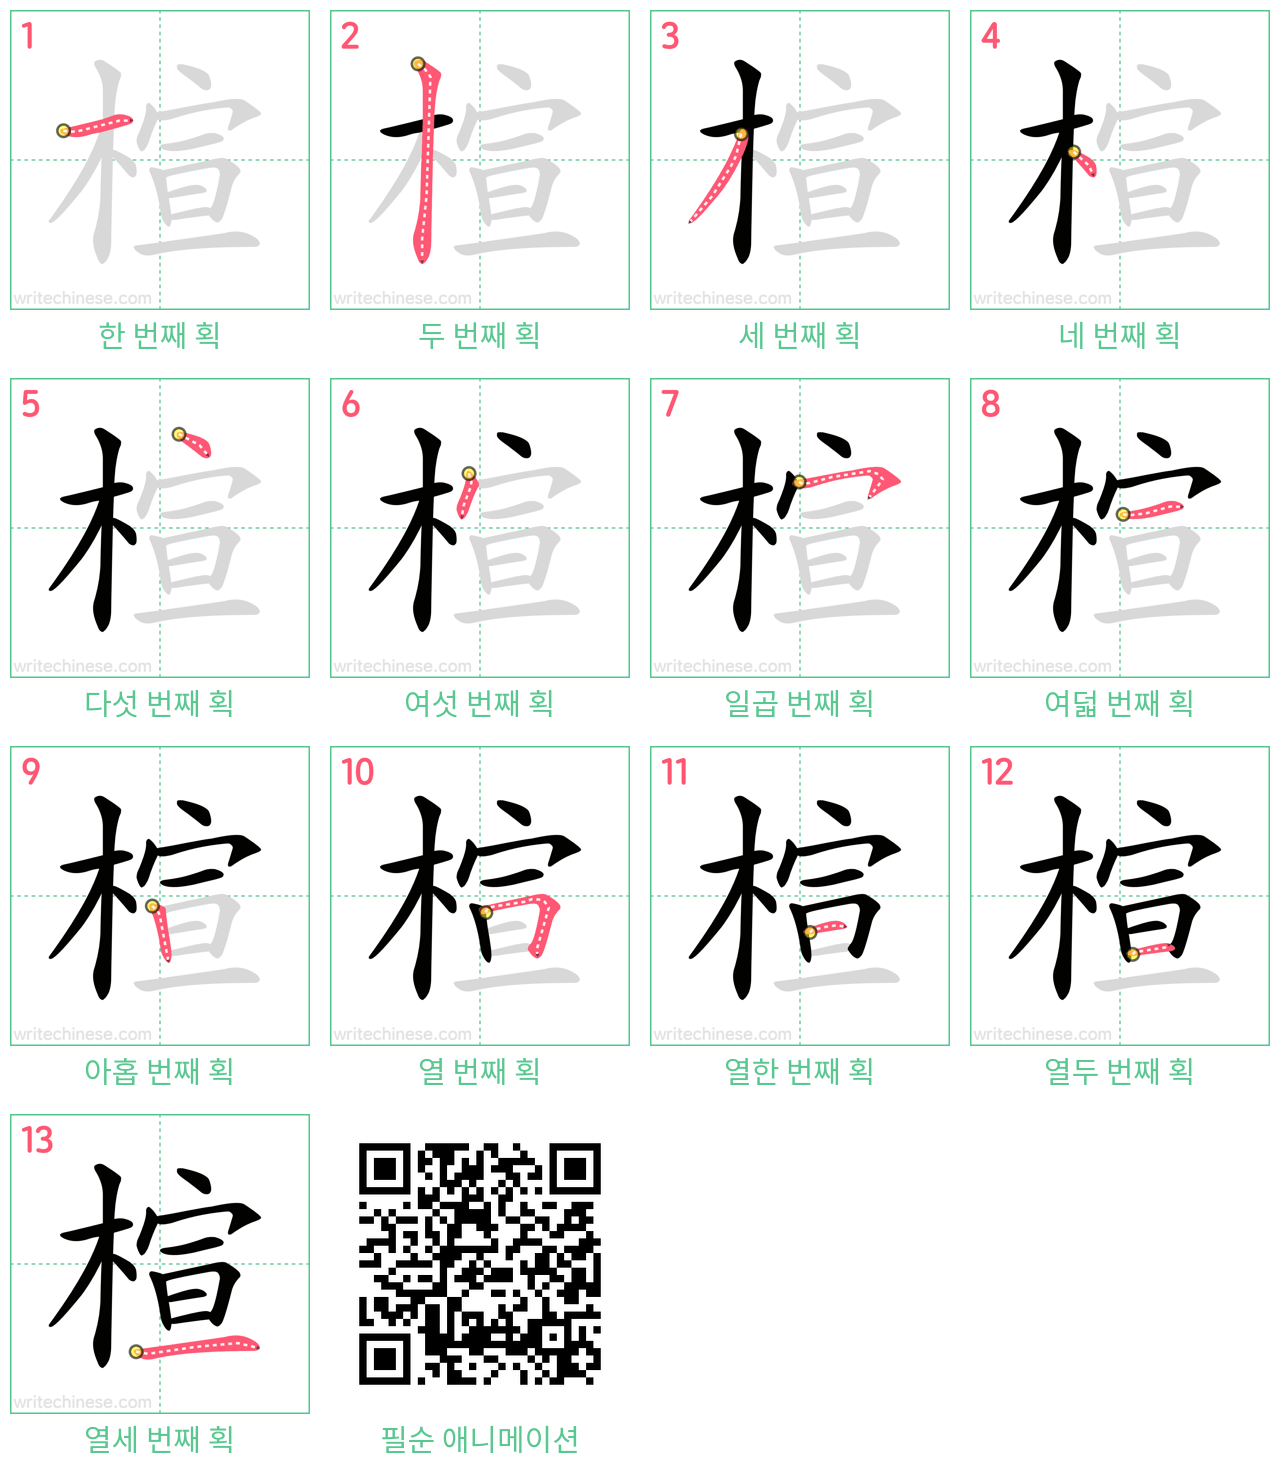 楦 step-by-step stroke order diagrams